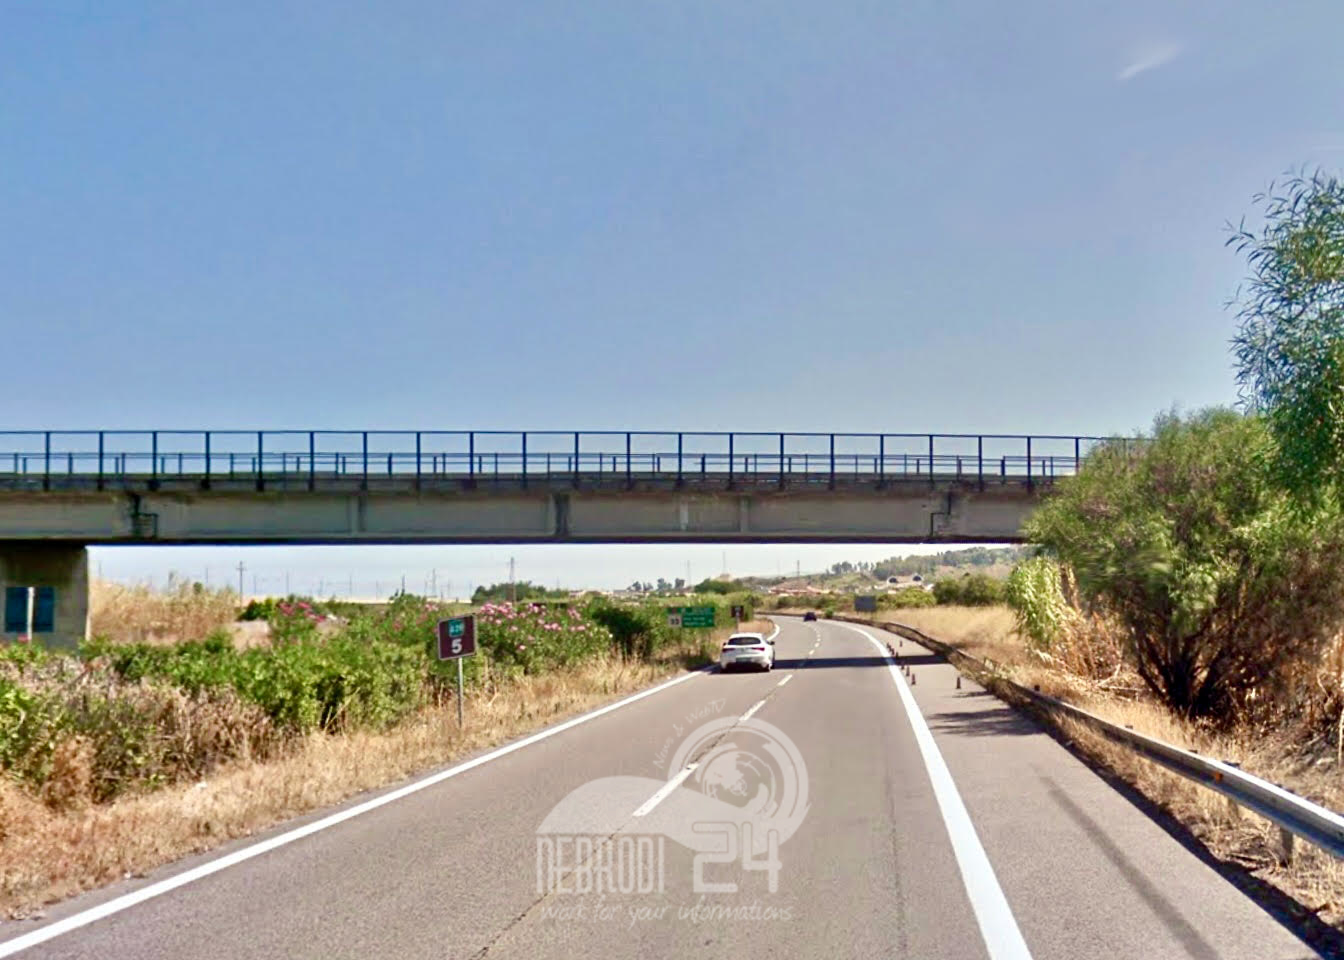 A20 Messina / Palermo – Maltempo: la demolizione del cavalcavia autostradale di Venetico posticipata di 24 ore